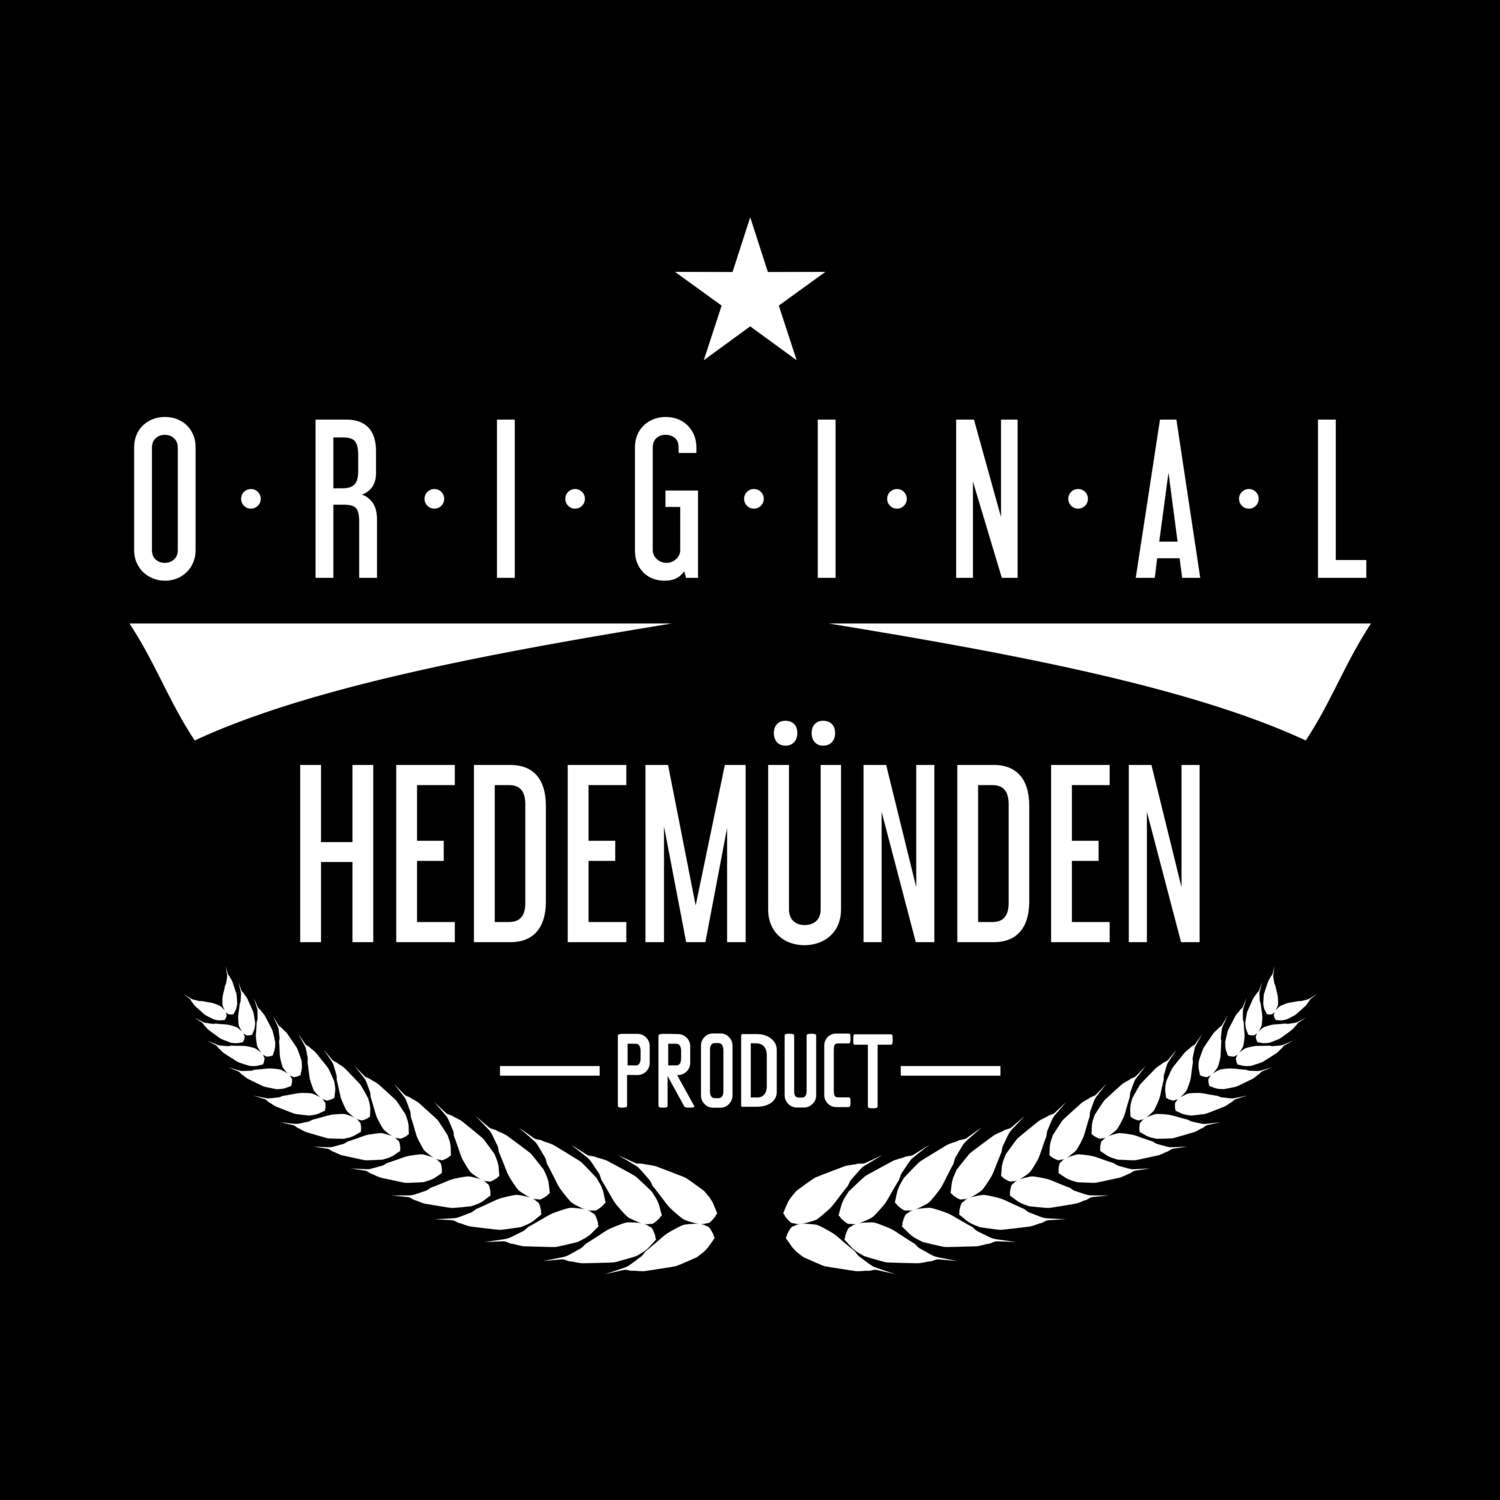 Hedemünden T-Shirt »Original Product«